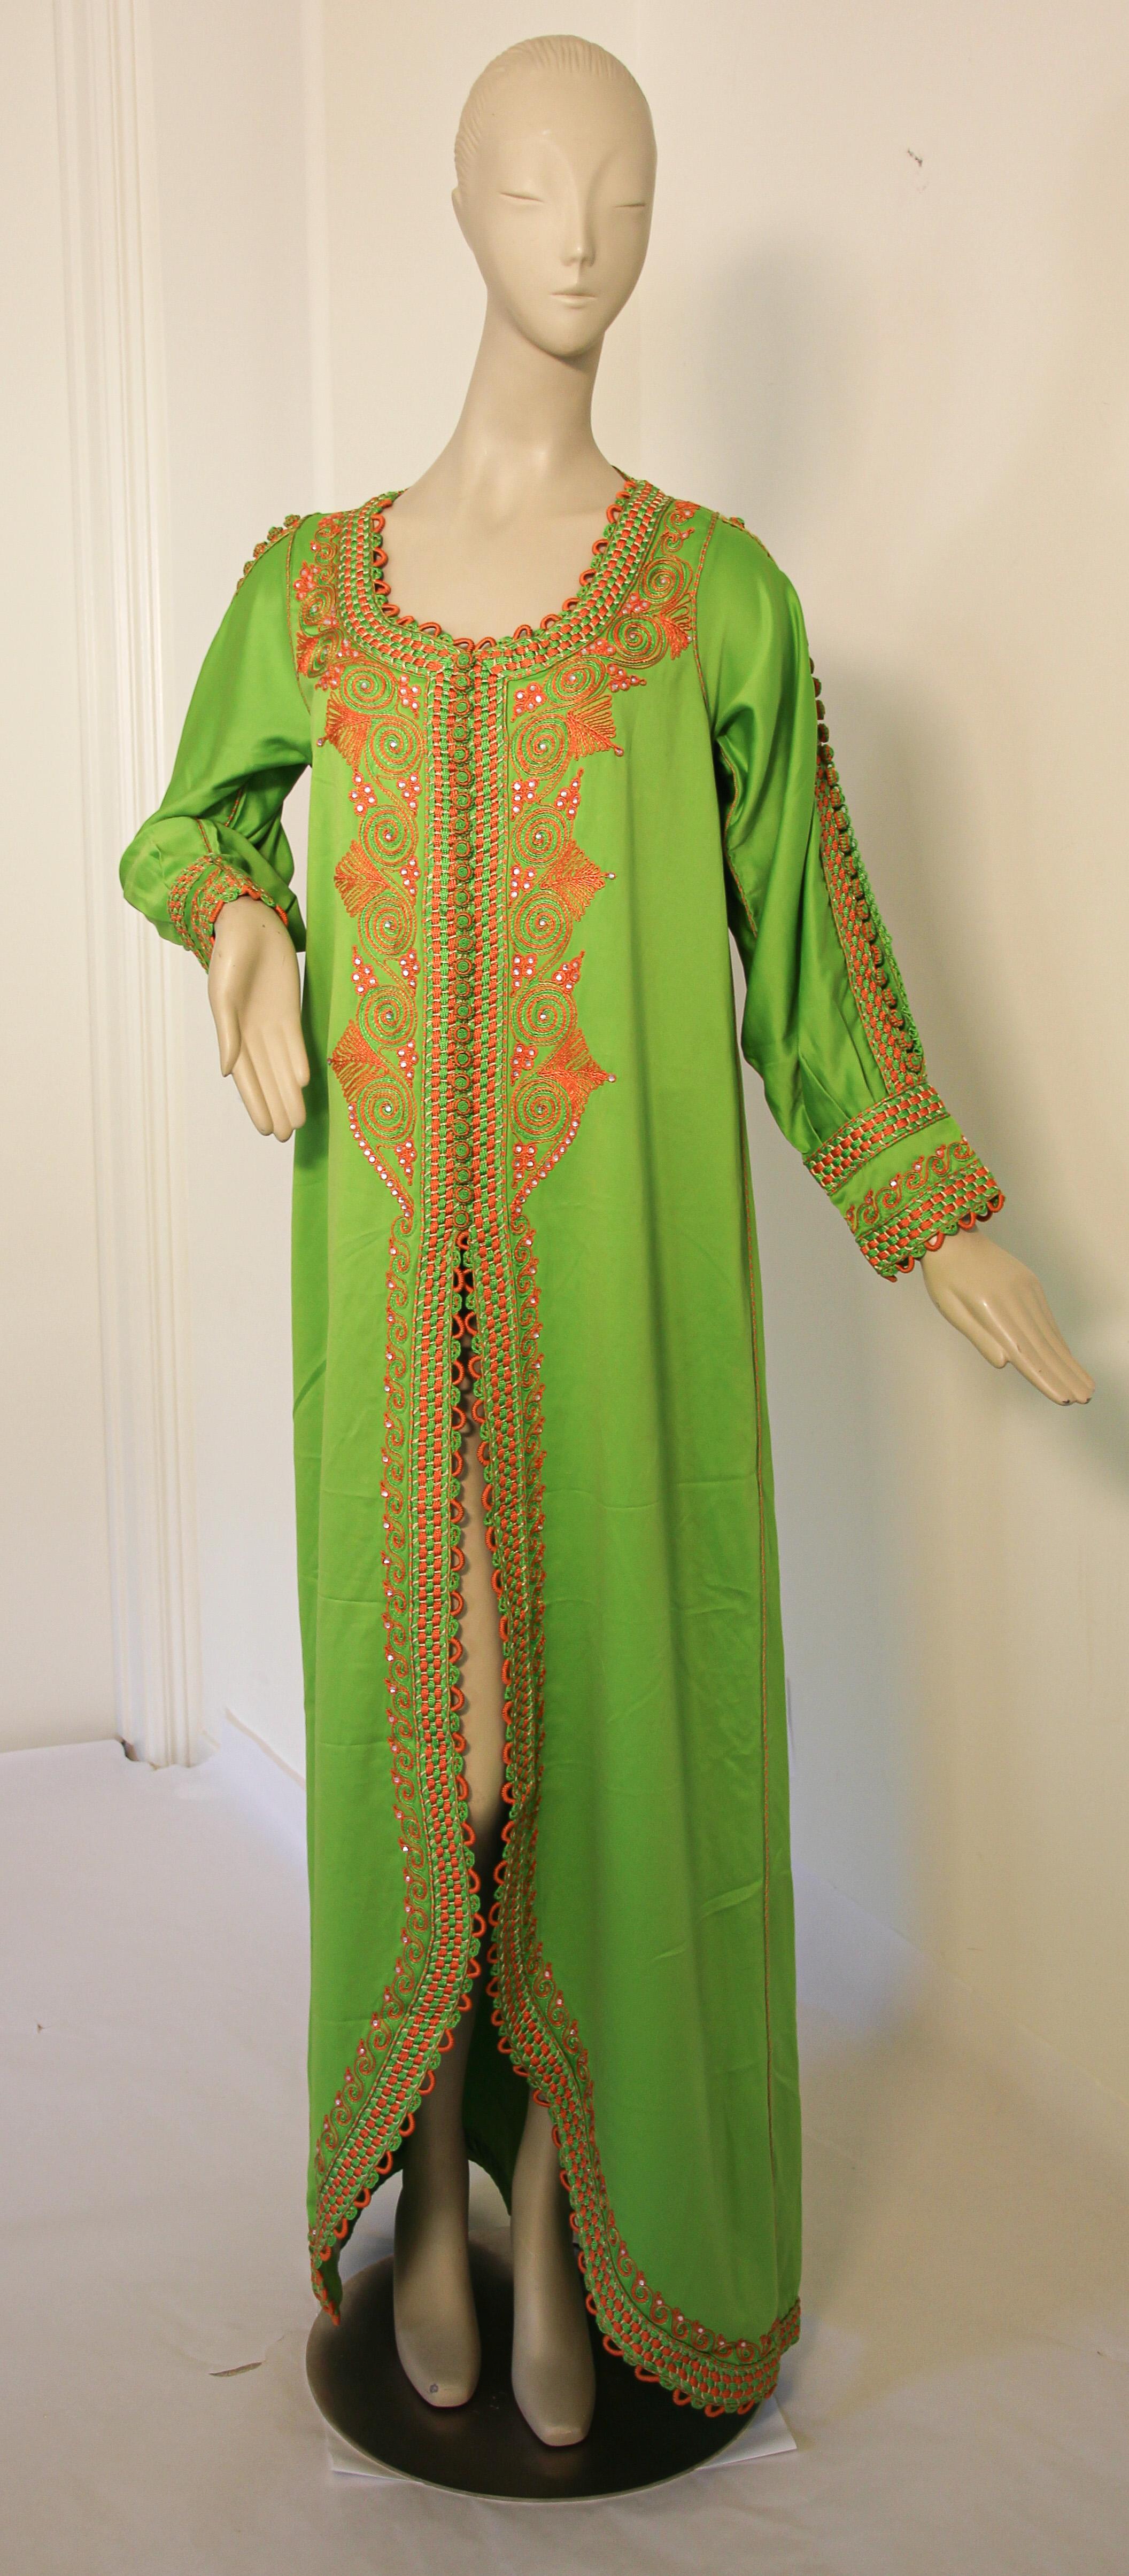 Elegant caftan marocain en vert Kelly et orange brodé.
vers les années 1970.
Cette longue robe maxi kaftan est brodée et embellie entièrement à la main.
Il est confectionné au Maroc et conçu pour une coupe décontractée.
Robe de soirée marocaine